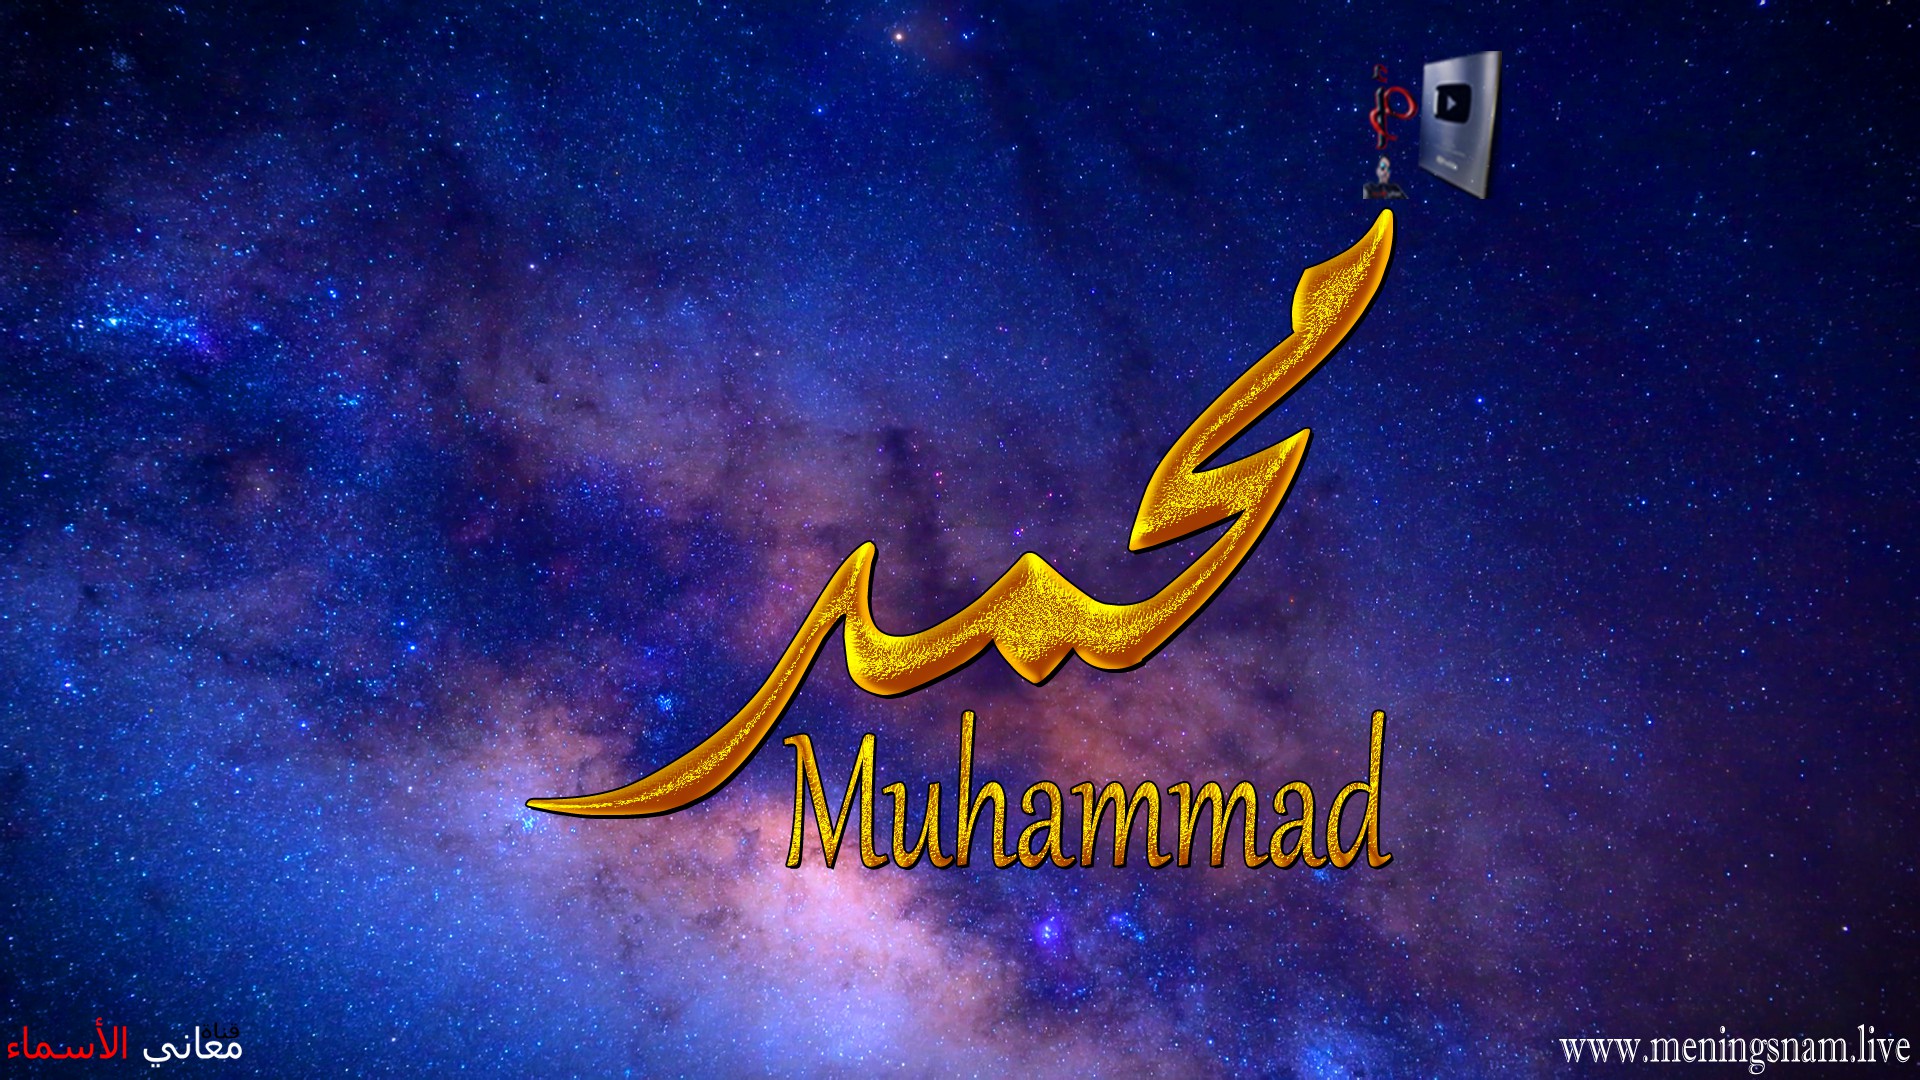 معنى اسم, محمد, وصفات, حامل, هذا الاسم, Mohammad,